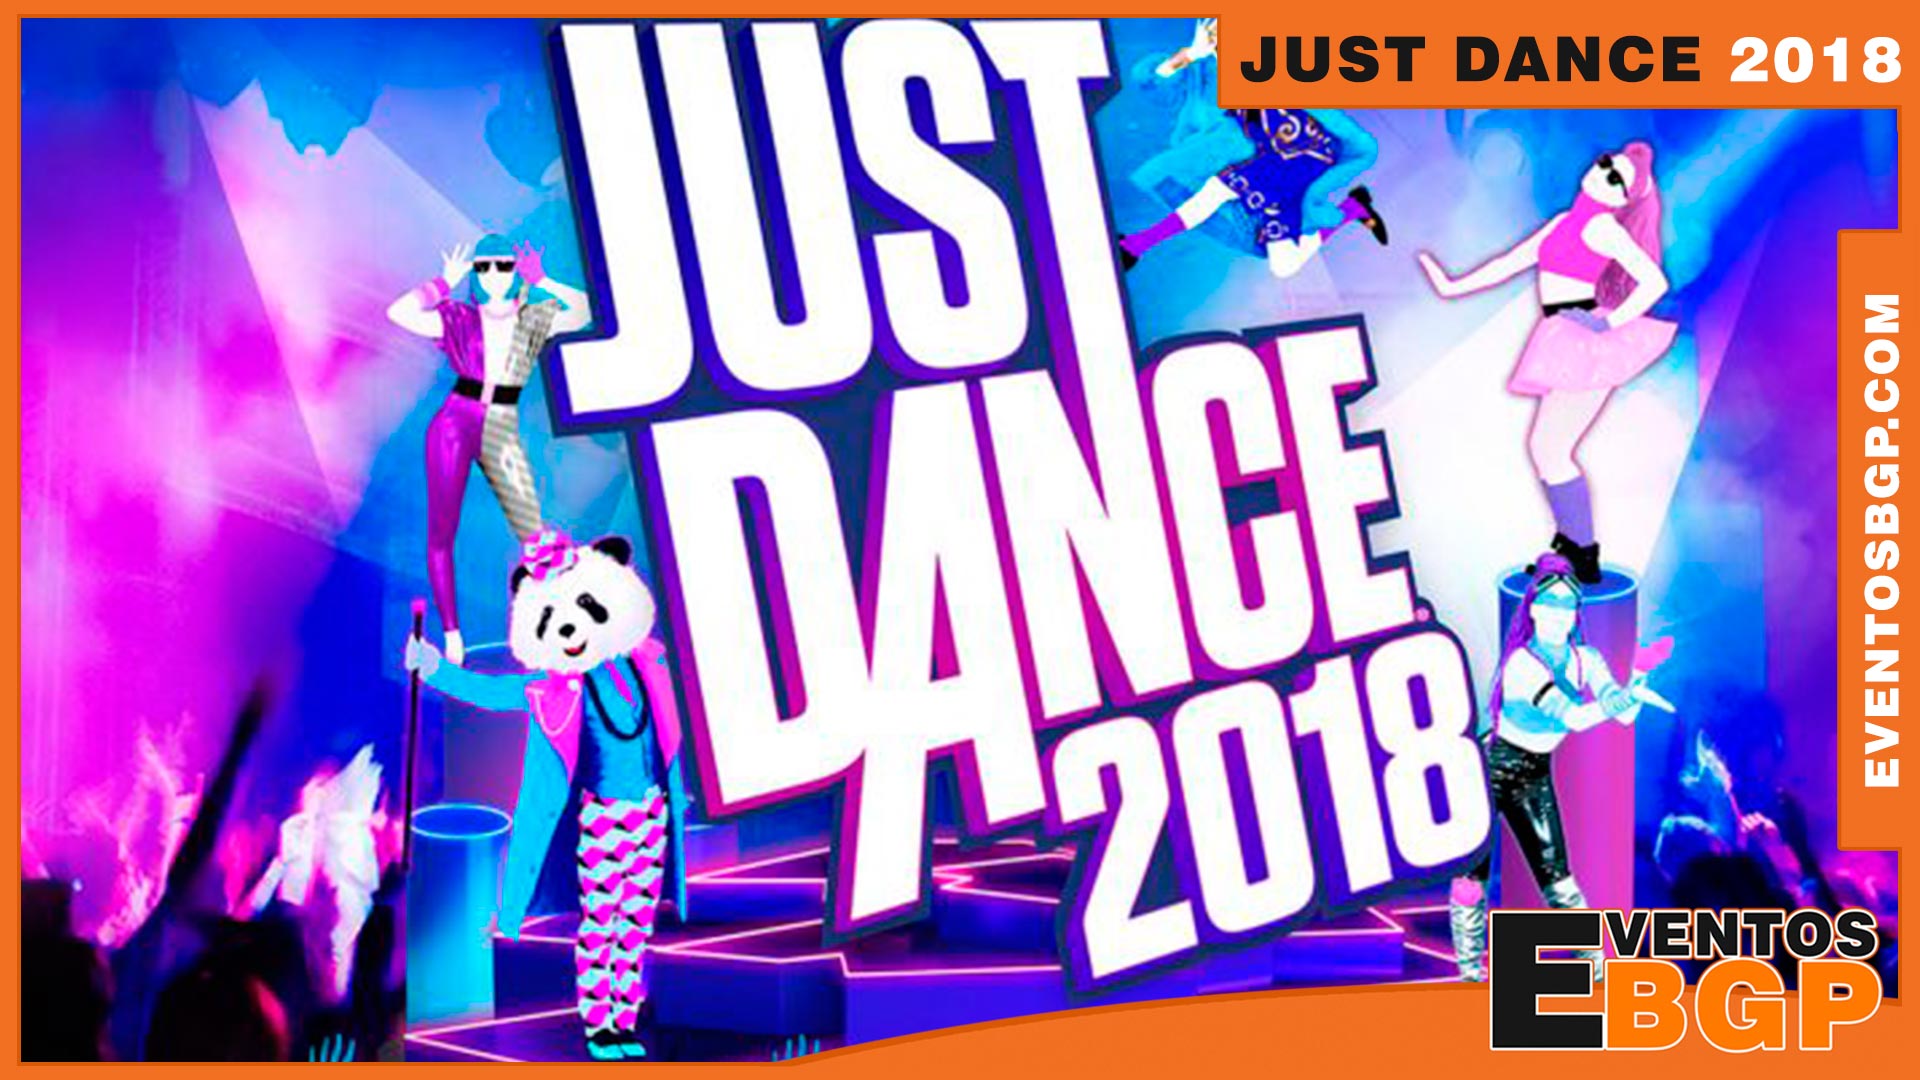 Fotografía de Baile con Just Dance 2018